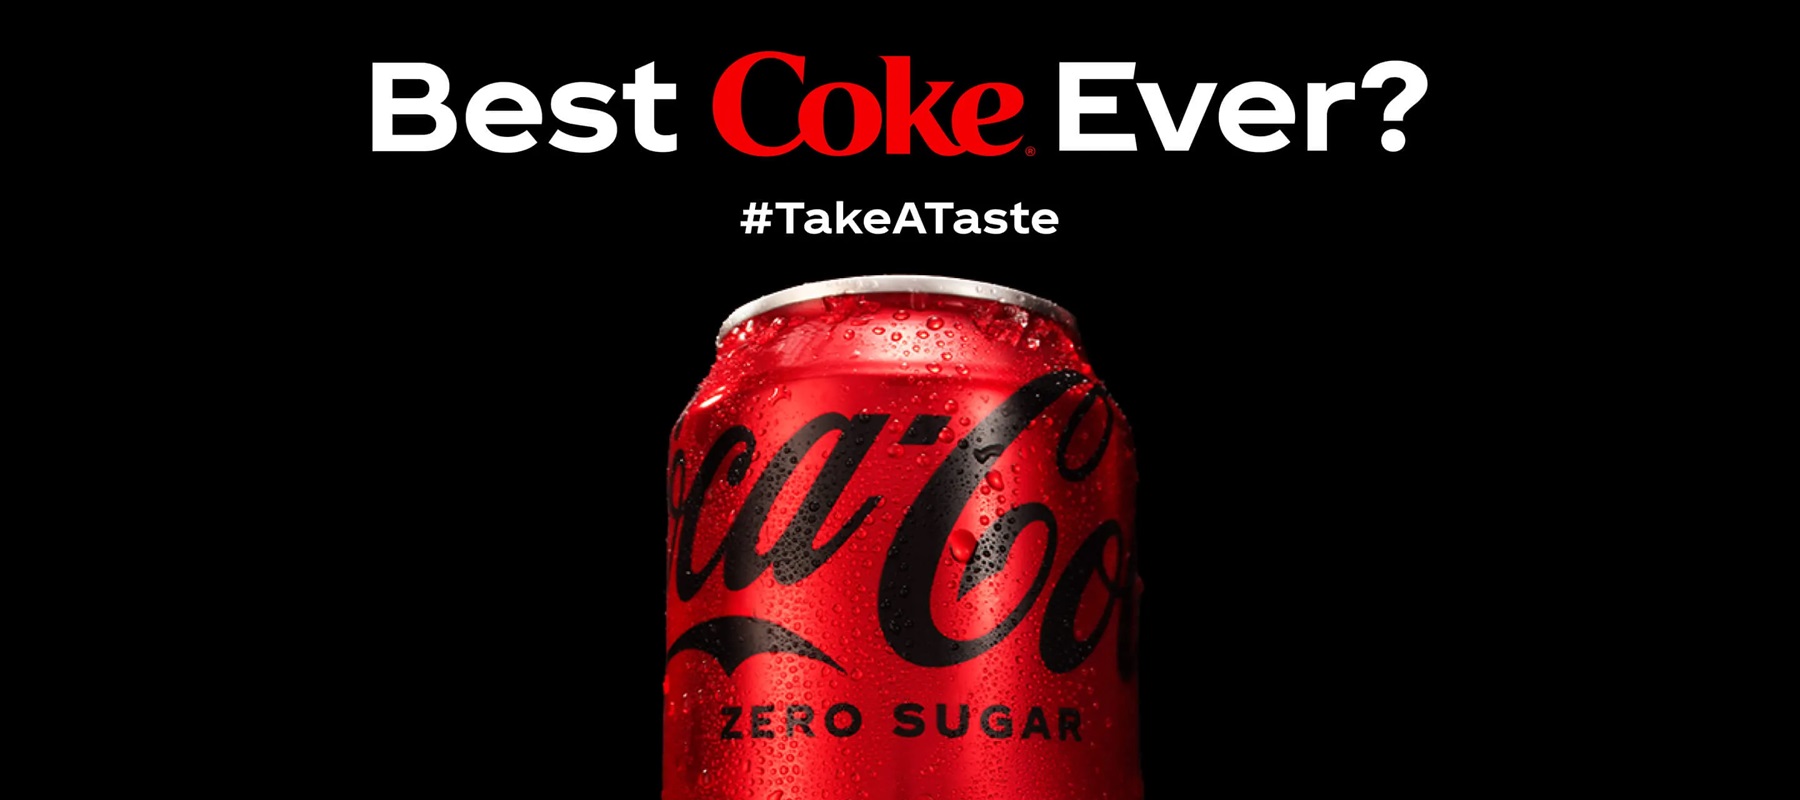 Coke Zero Sugar taps AI in new global campaign